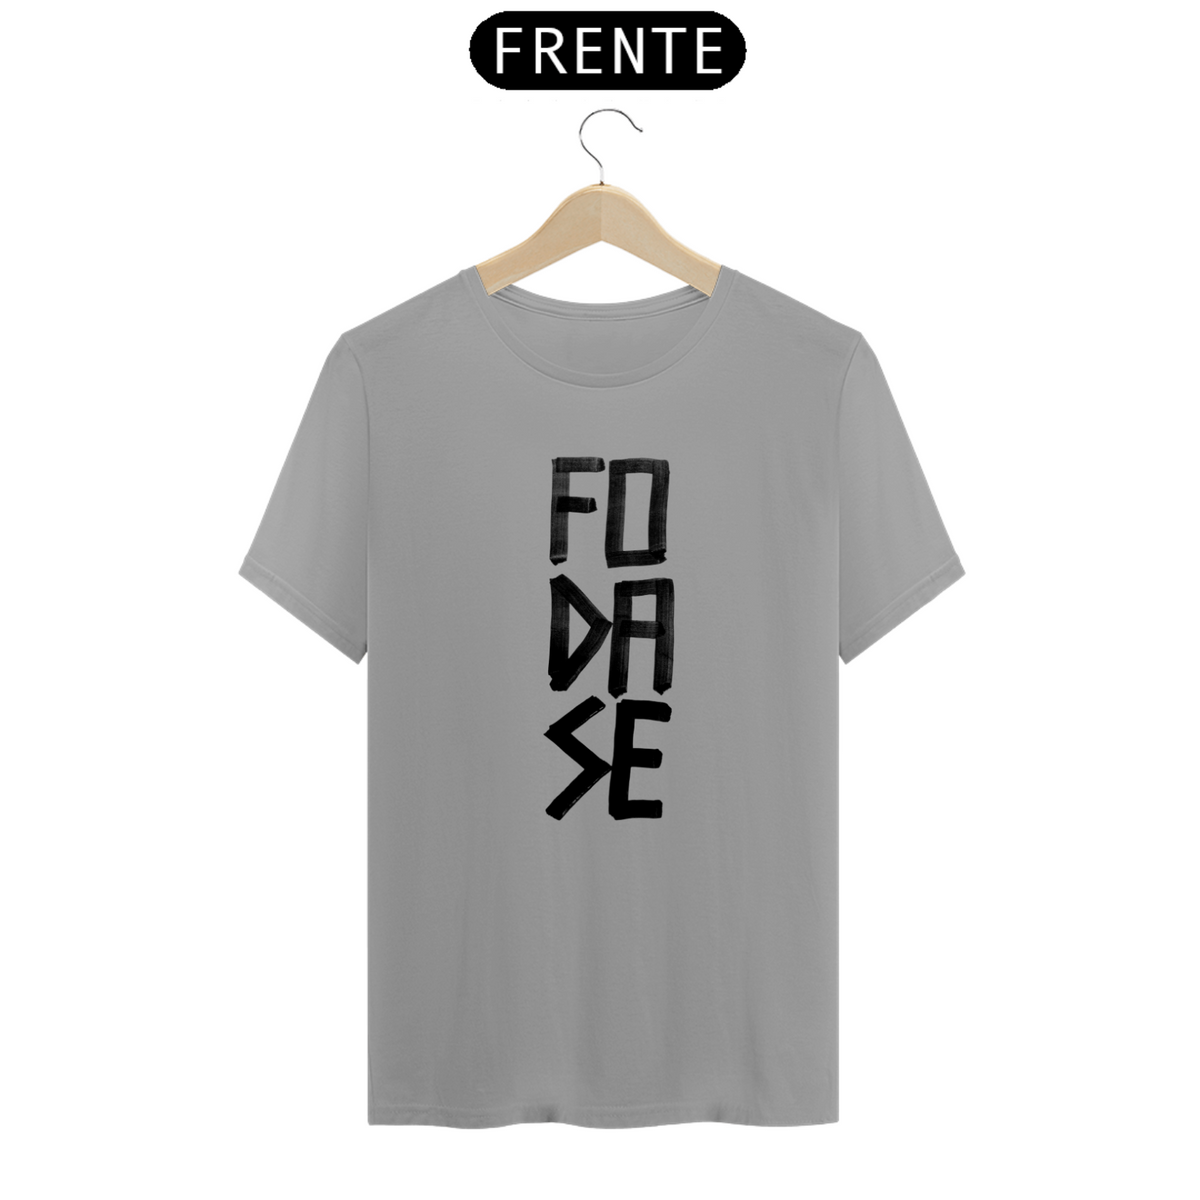 Nome do produto: Camiseta FO DA SE